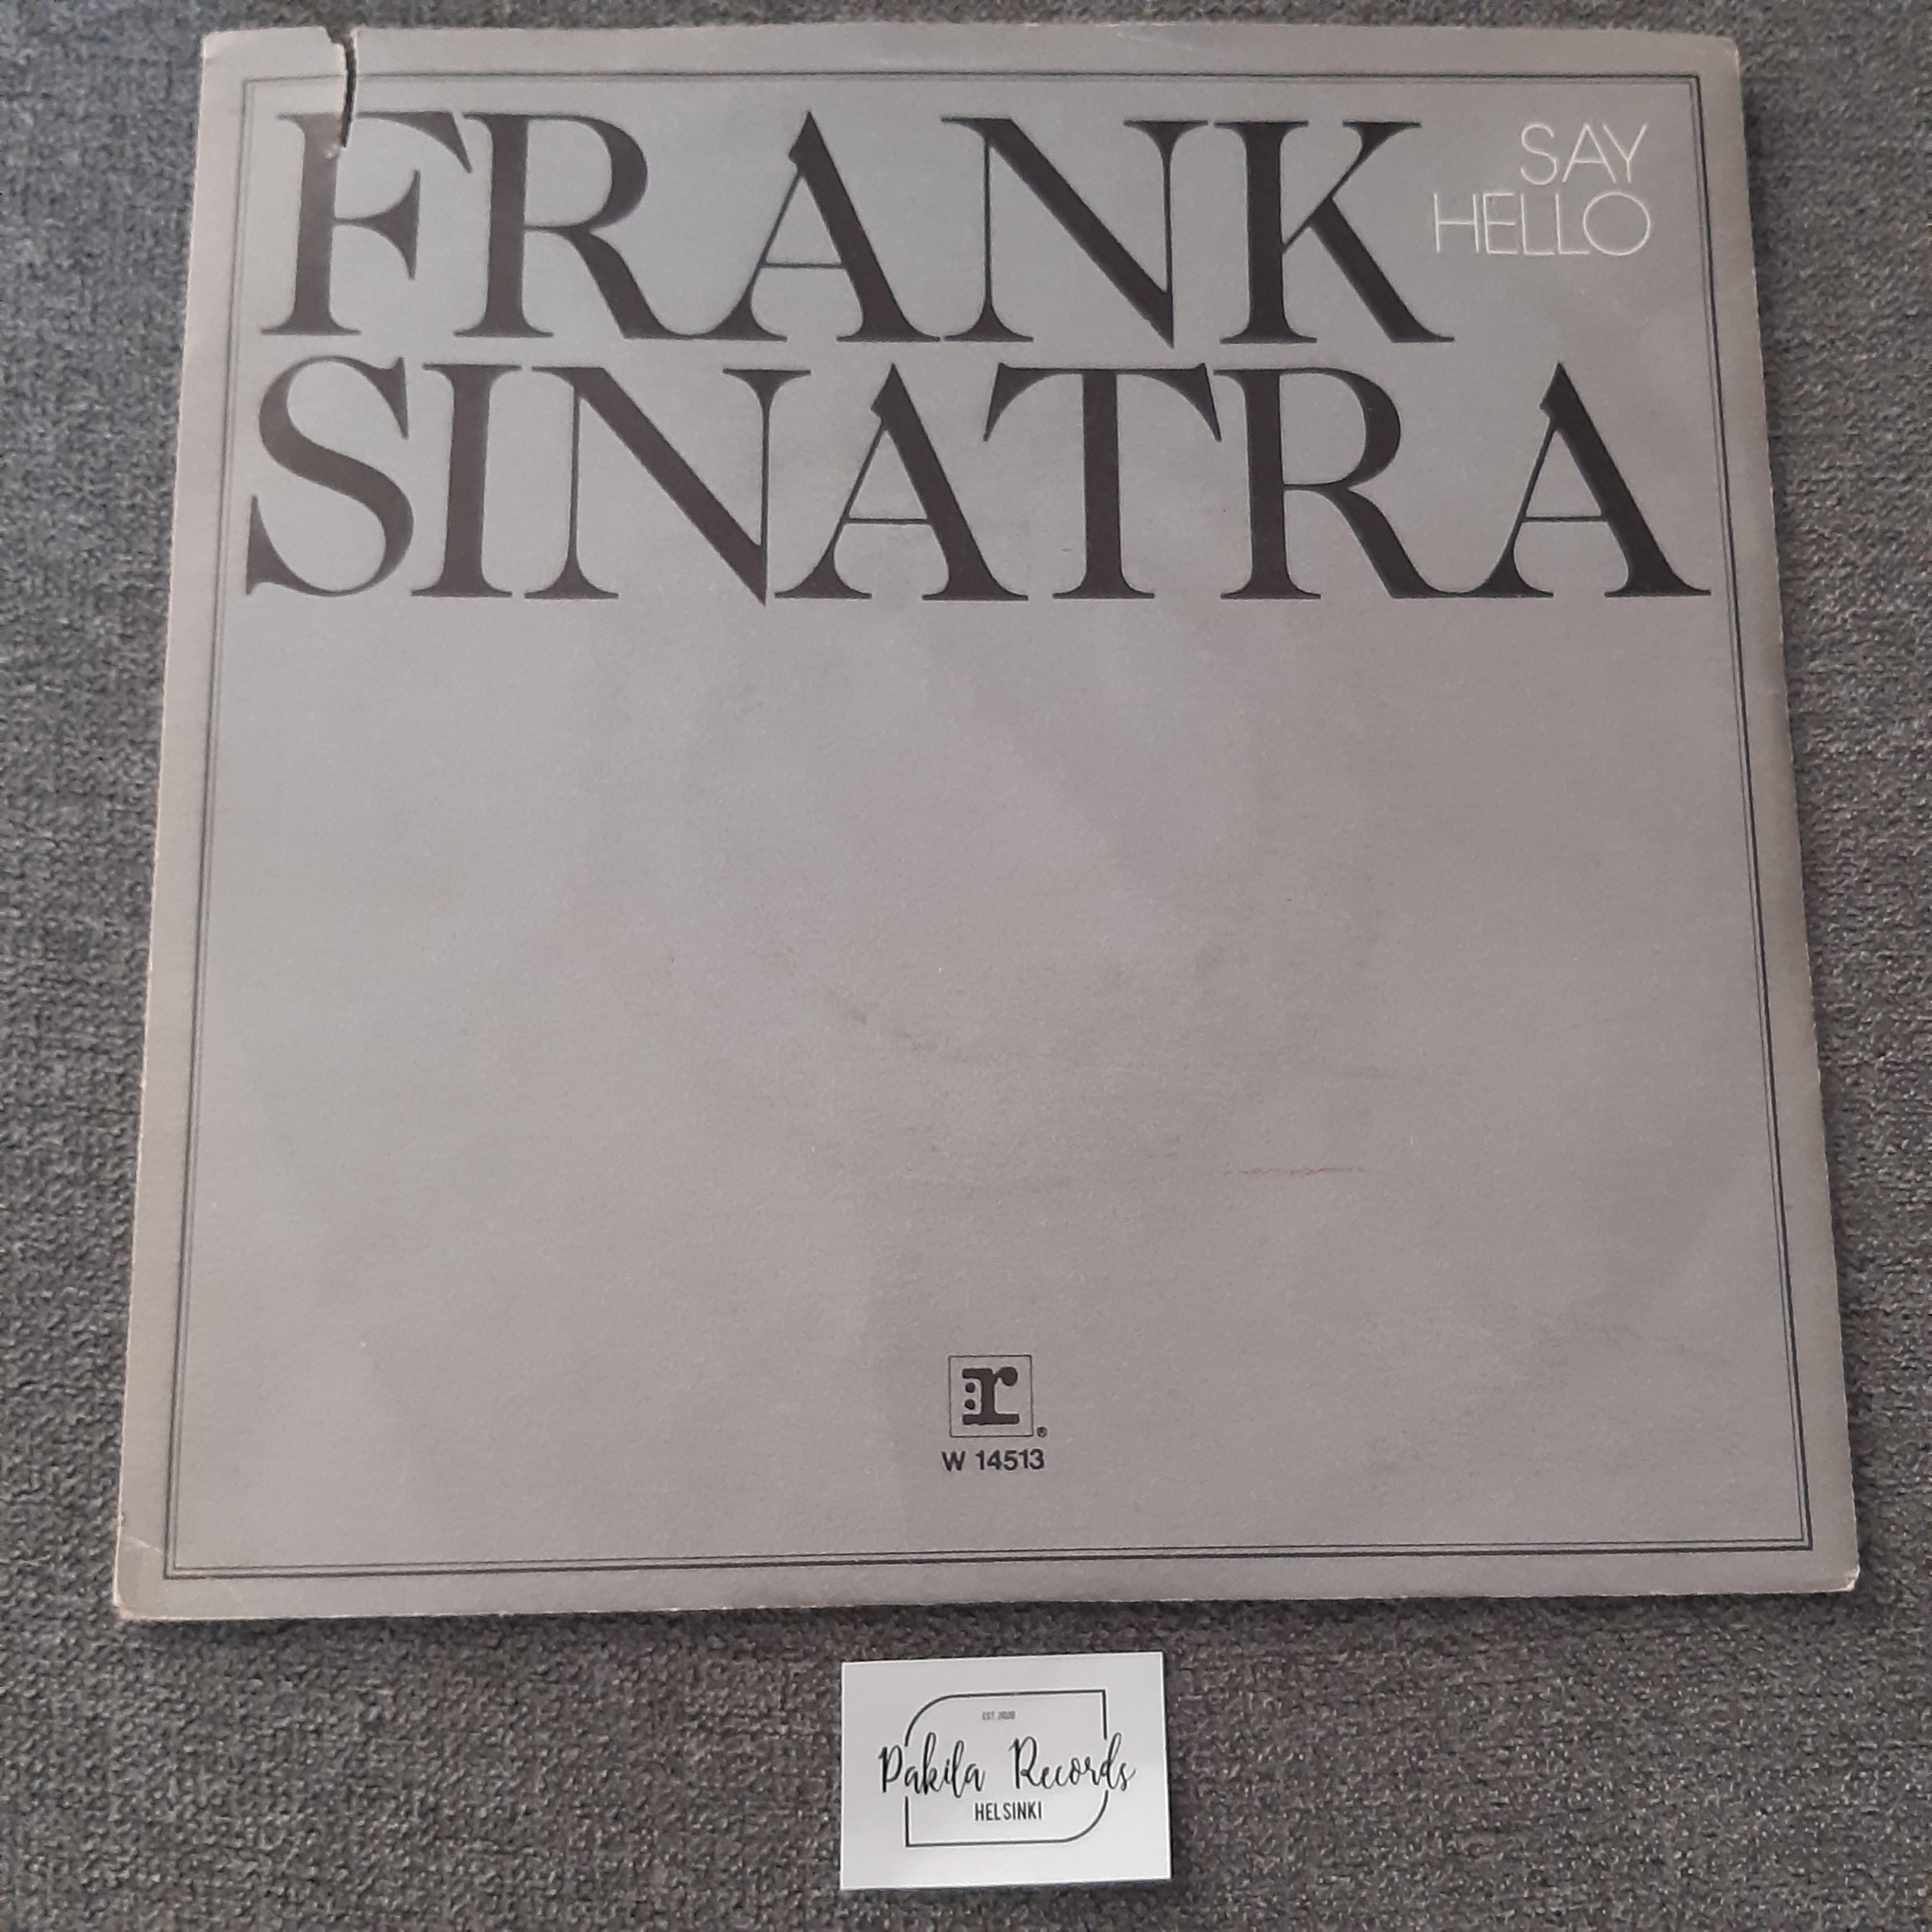 Frank Sinatra - Say Hello - Single 7" (käytetty)